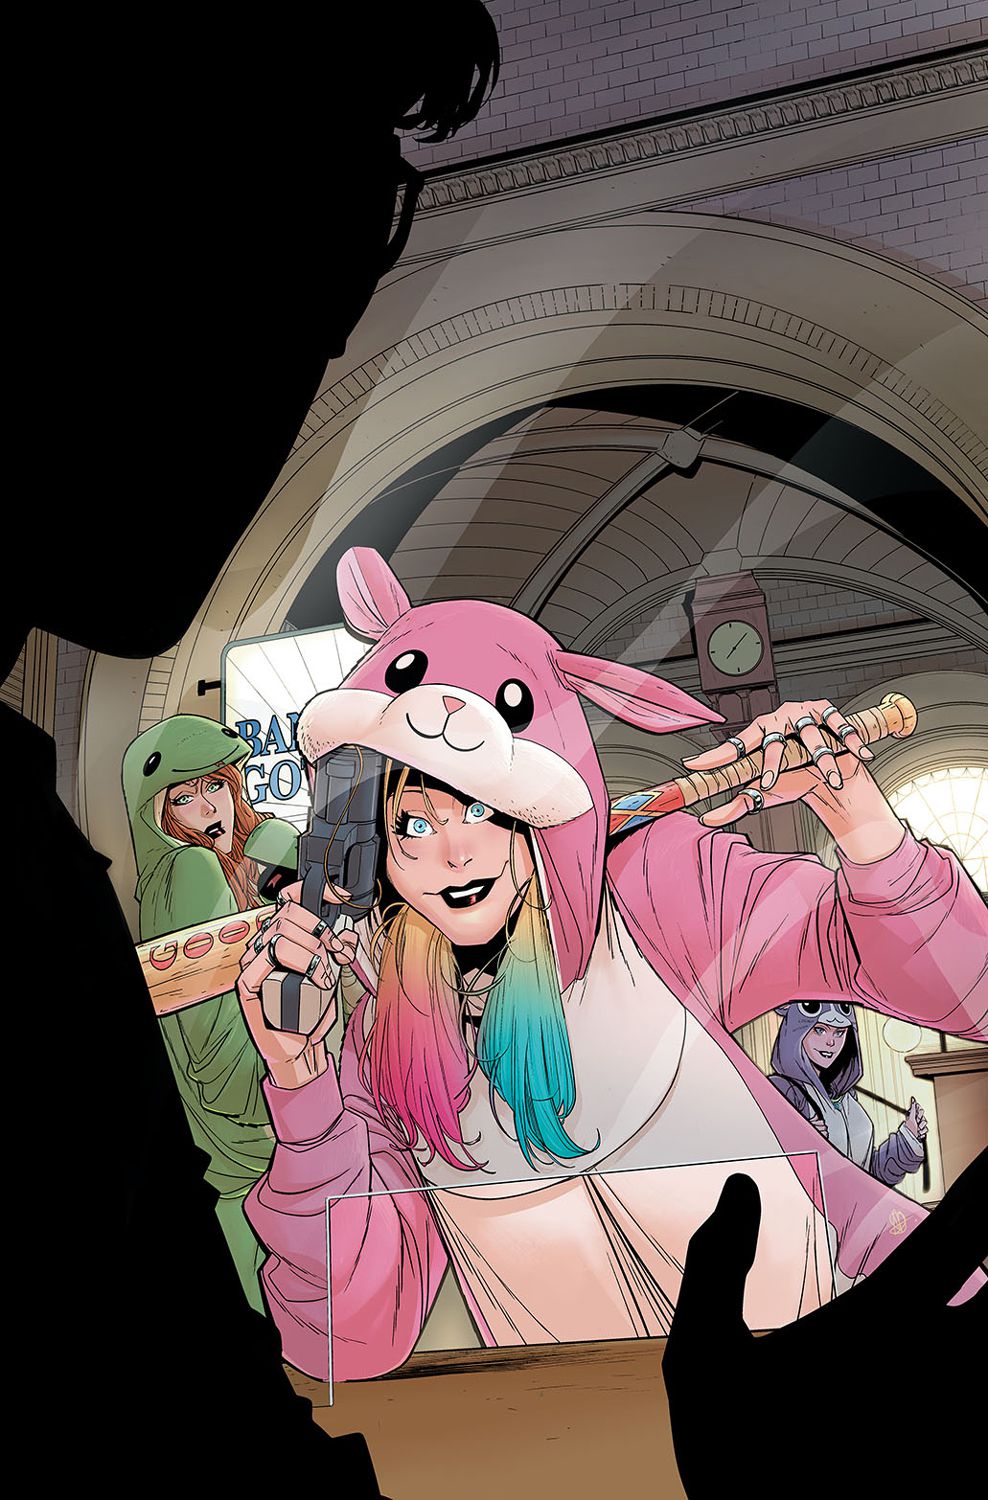 Harley Quinn, ubrana w różowy kombinezon w kształcie chomika, opiera się z uśmiechem o ladę kasjera, trzymając w jednej ręce kij baseballowy, a w drugiej pistolet.  Za nią widać Poison Ivy i Catwoman we własnych zielono-fioletowych kombinezonach.